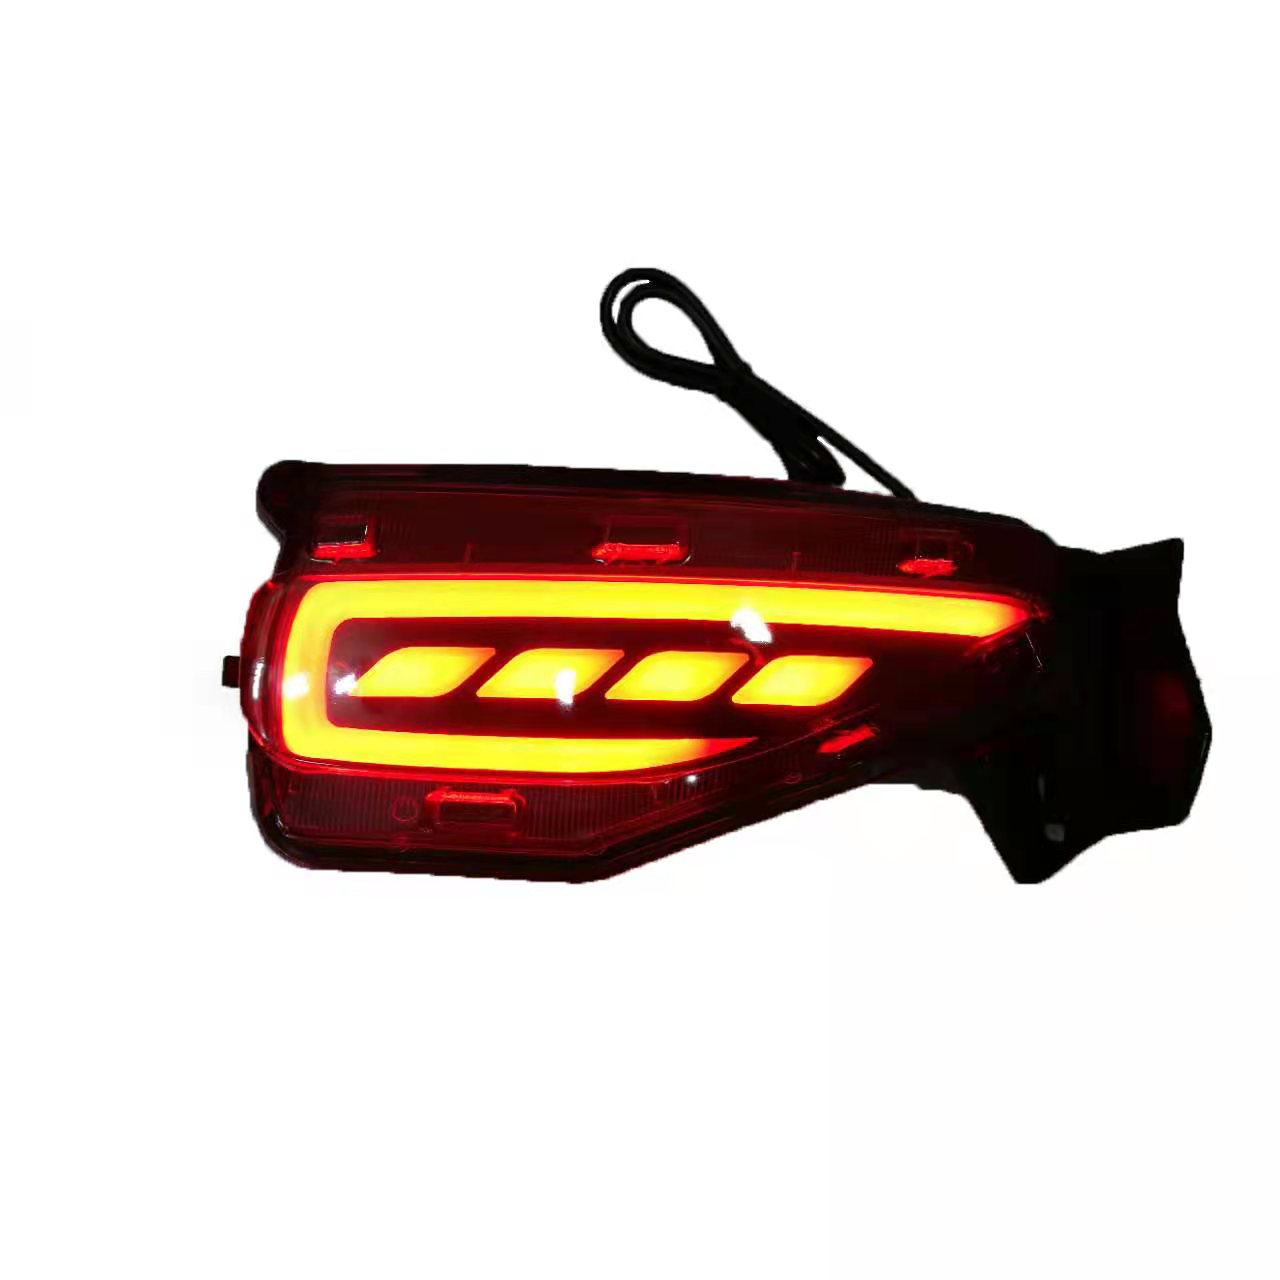 WenYe reflector rear bumper lights for Fortuner (4)